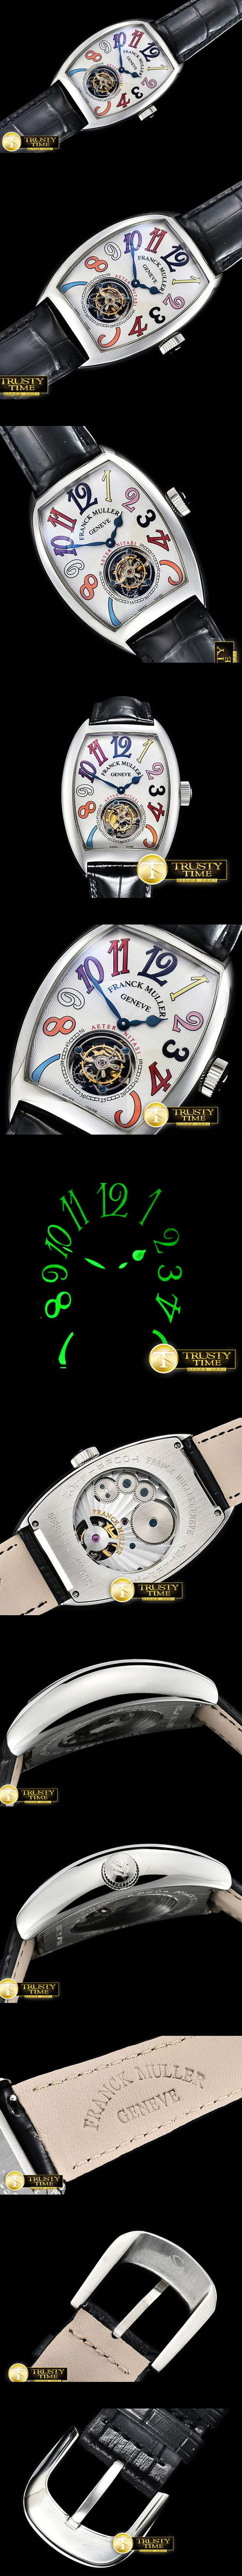 国内人気腕時計フランクミュラー トゥールビヨン搭載 (手巻き)